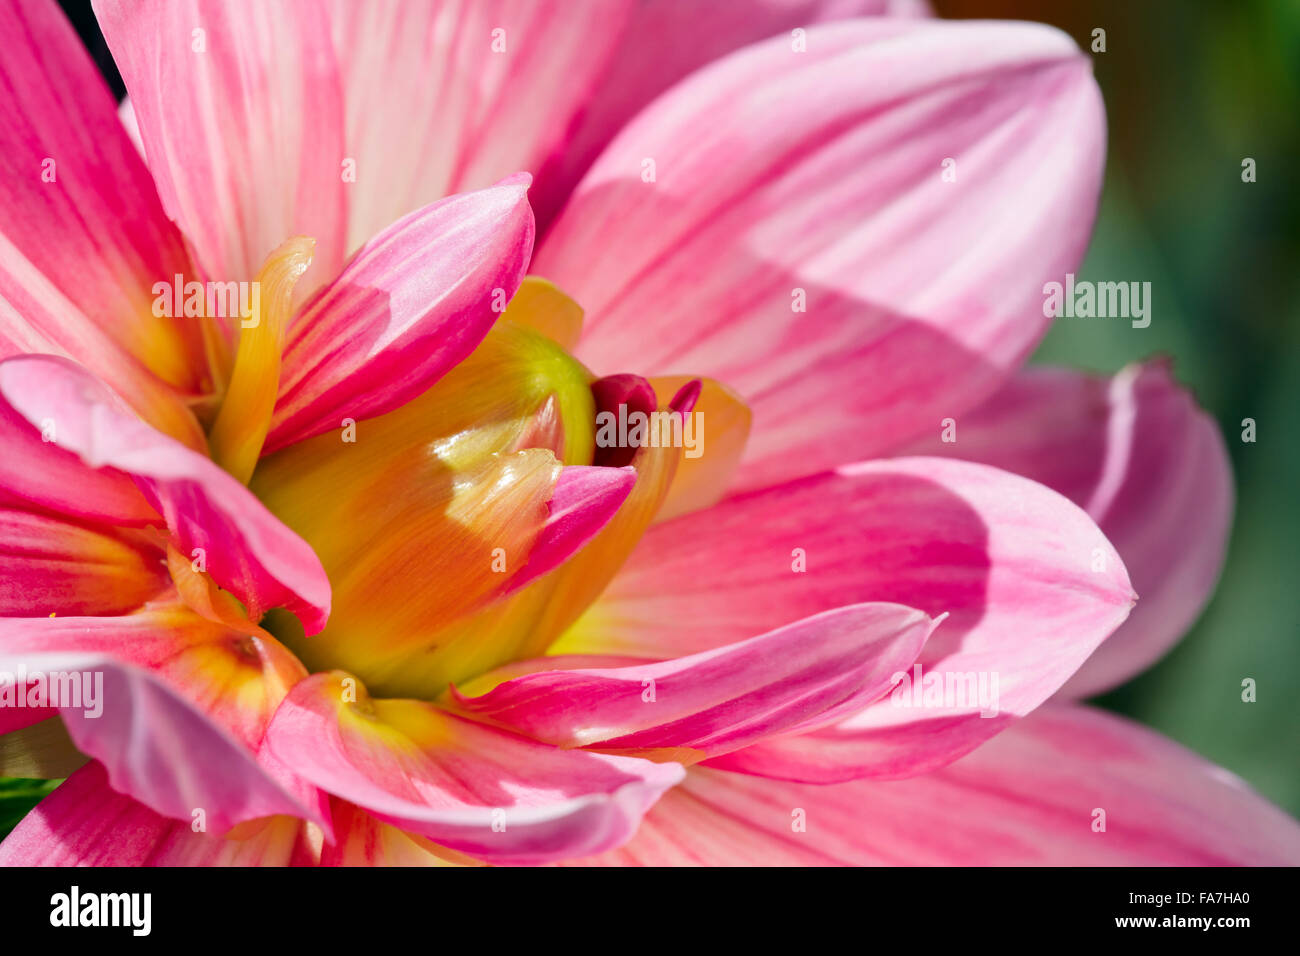 Dahlia flower close up. Stock Photo